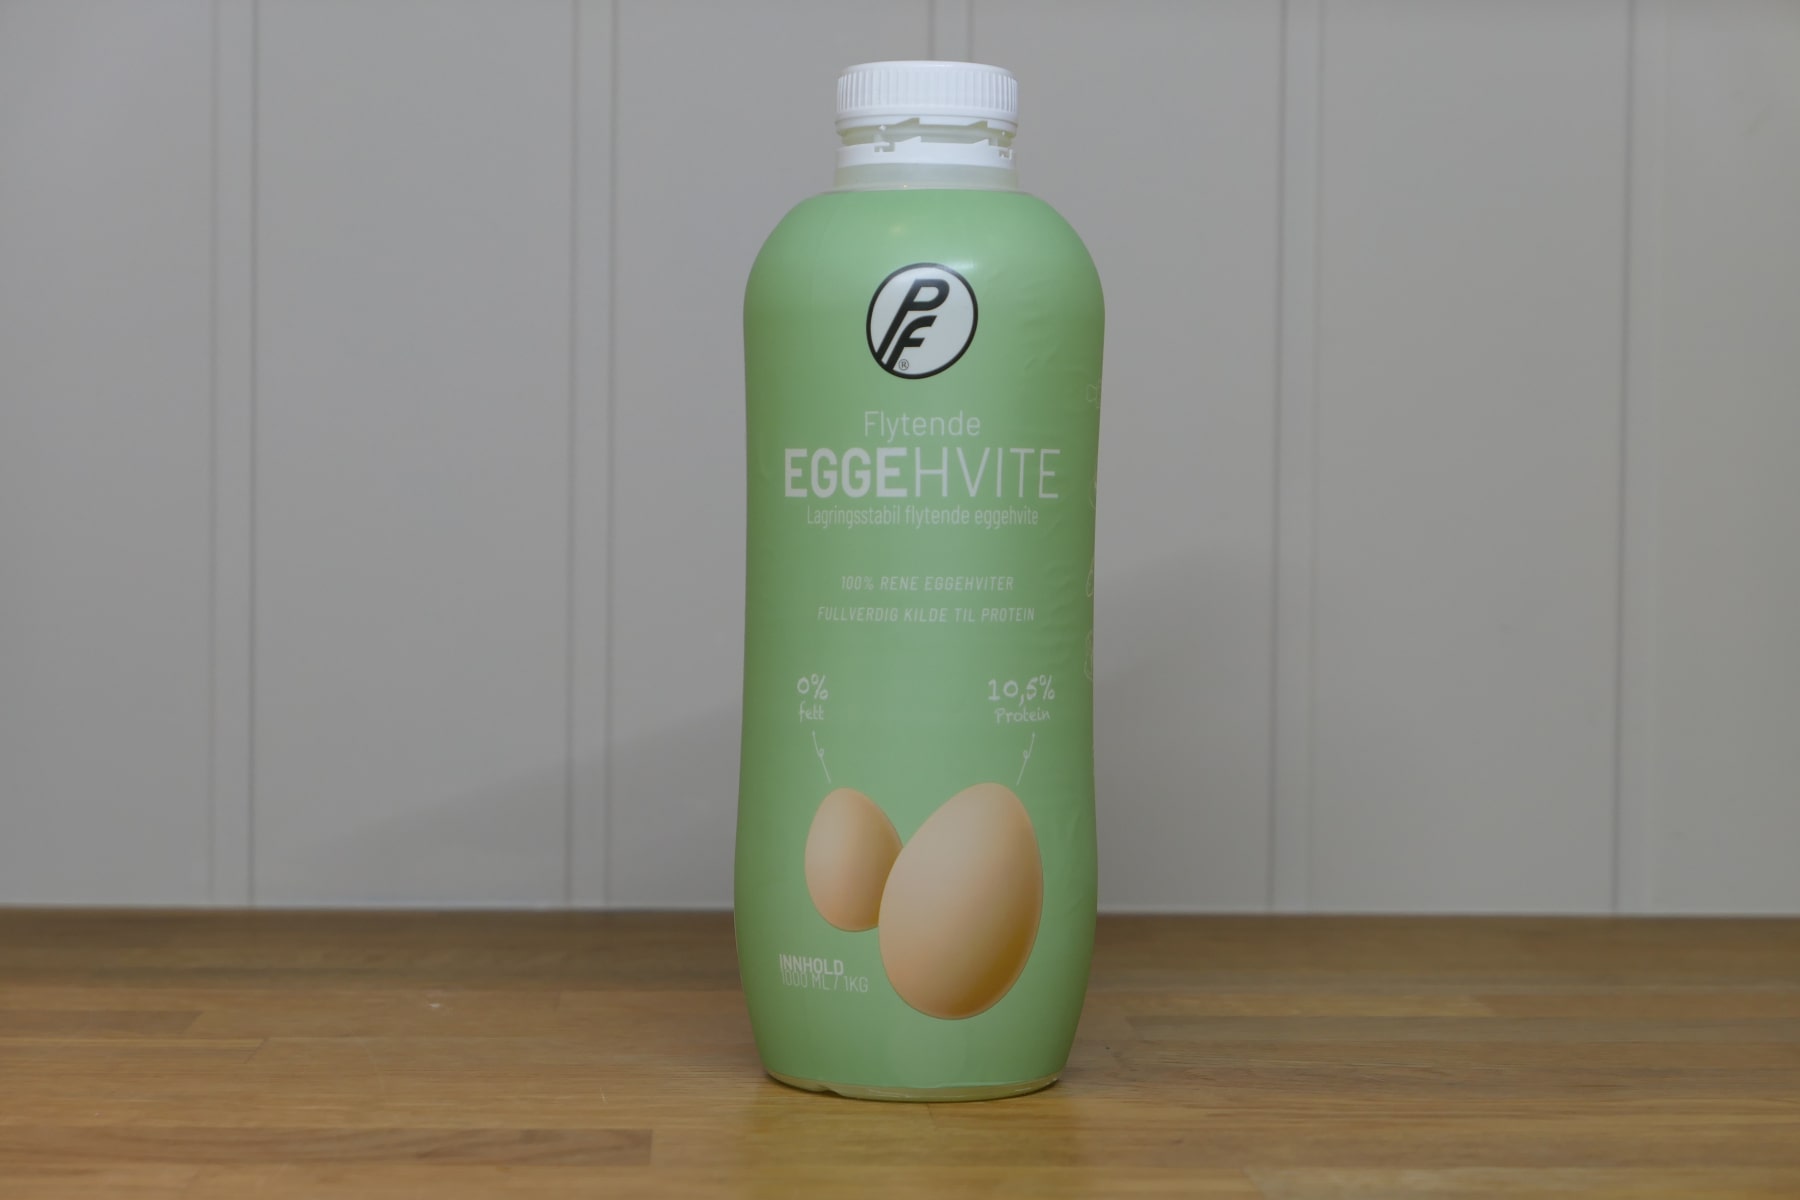 flytende eggehvite beholder